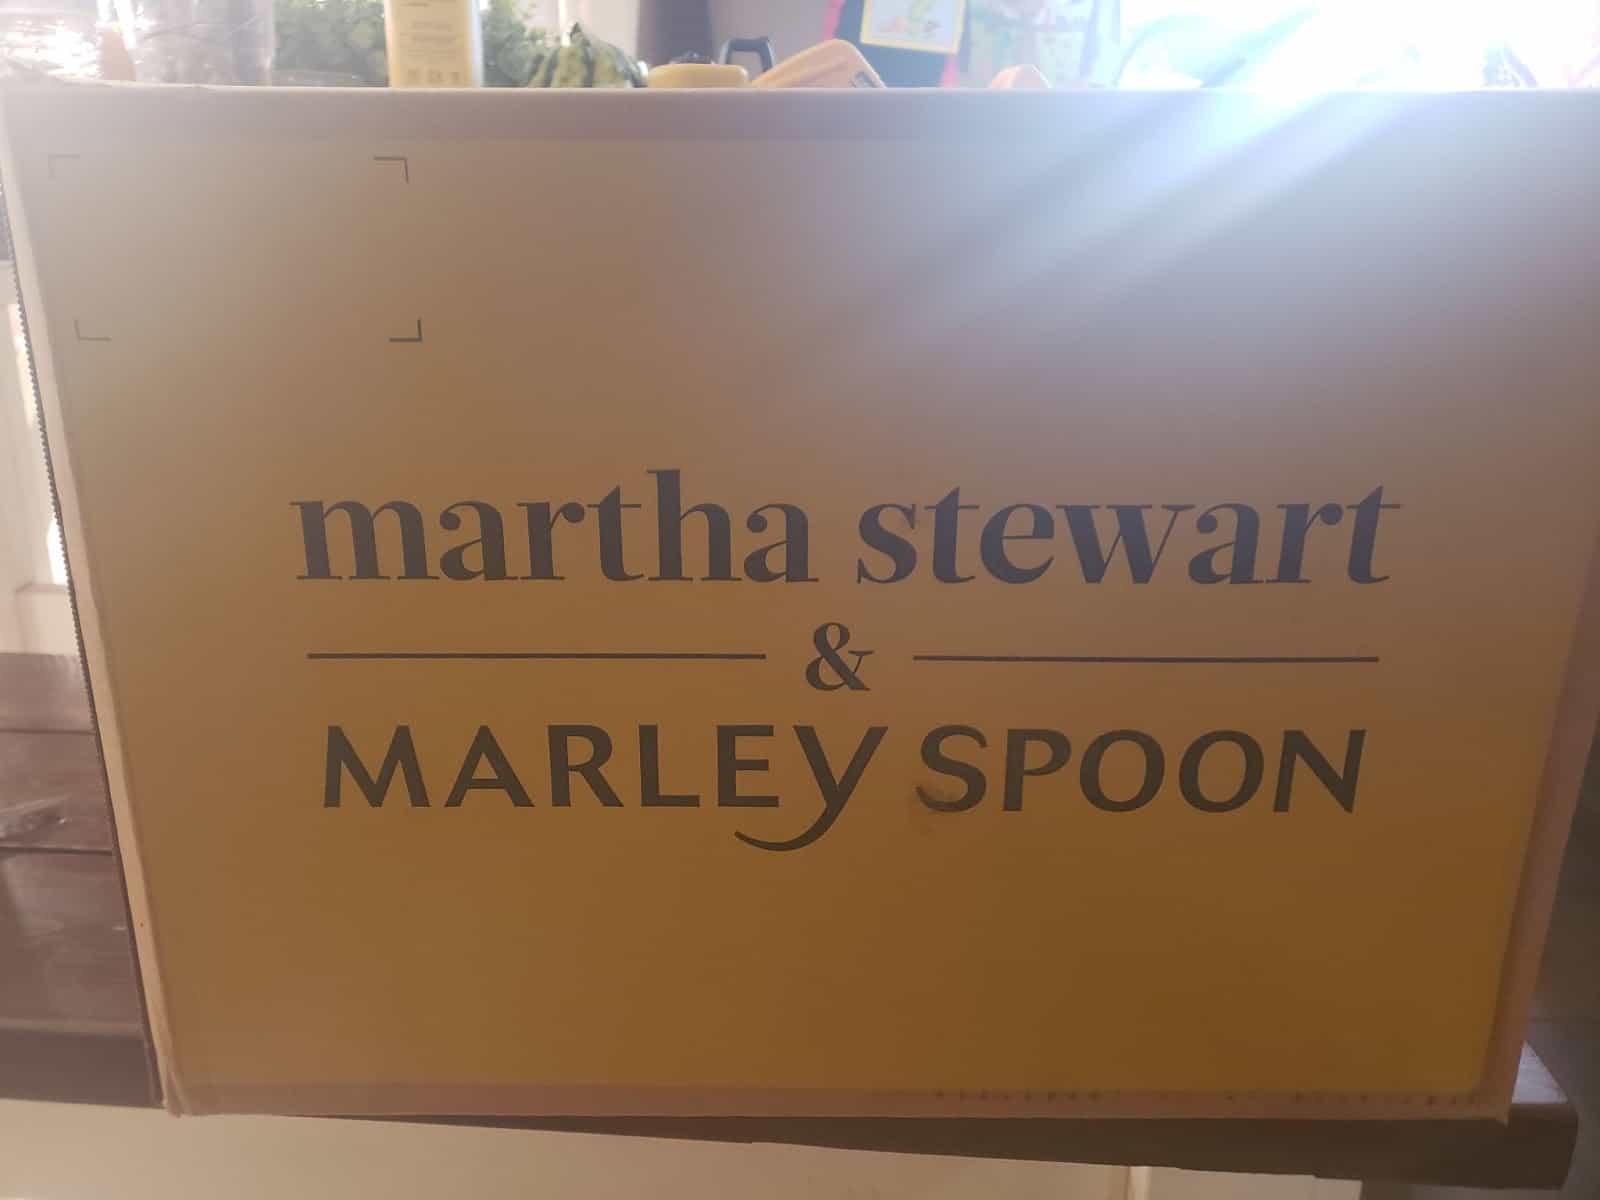 Martha Stewart & Marley Spoon box